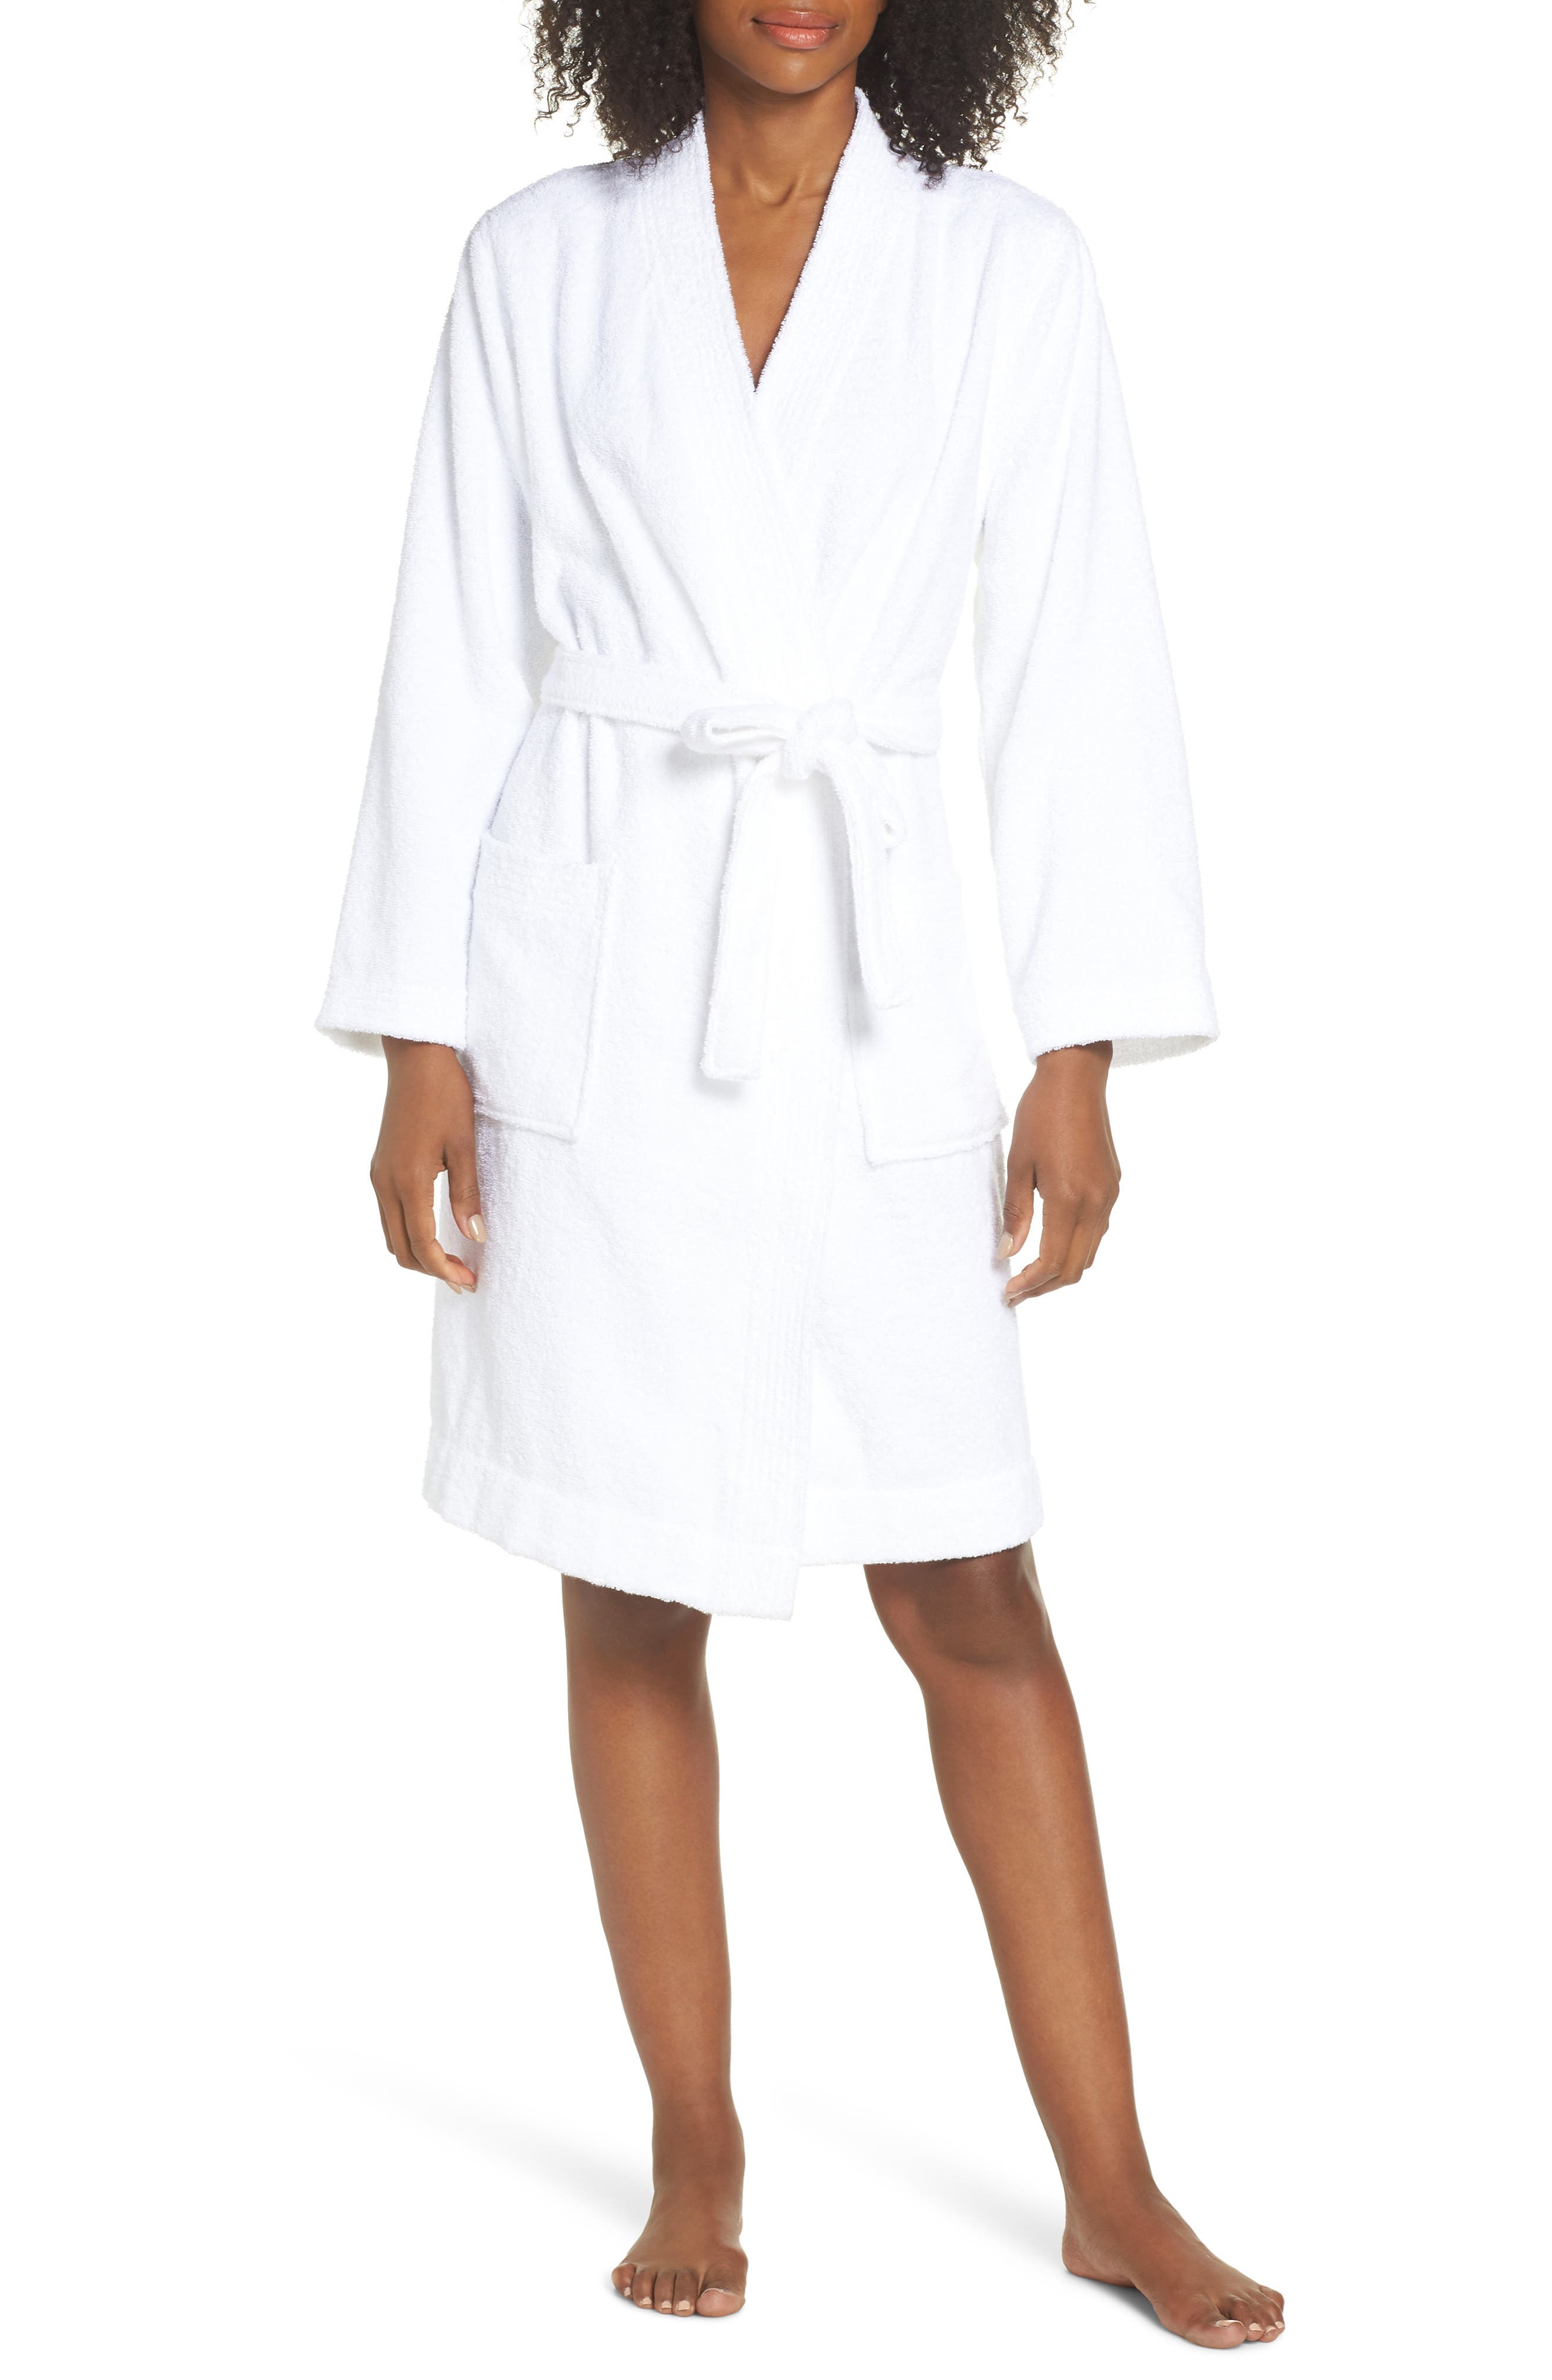 ugg white robe